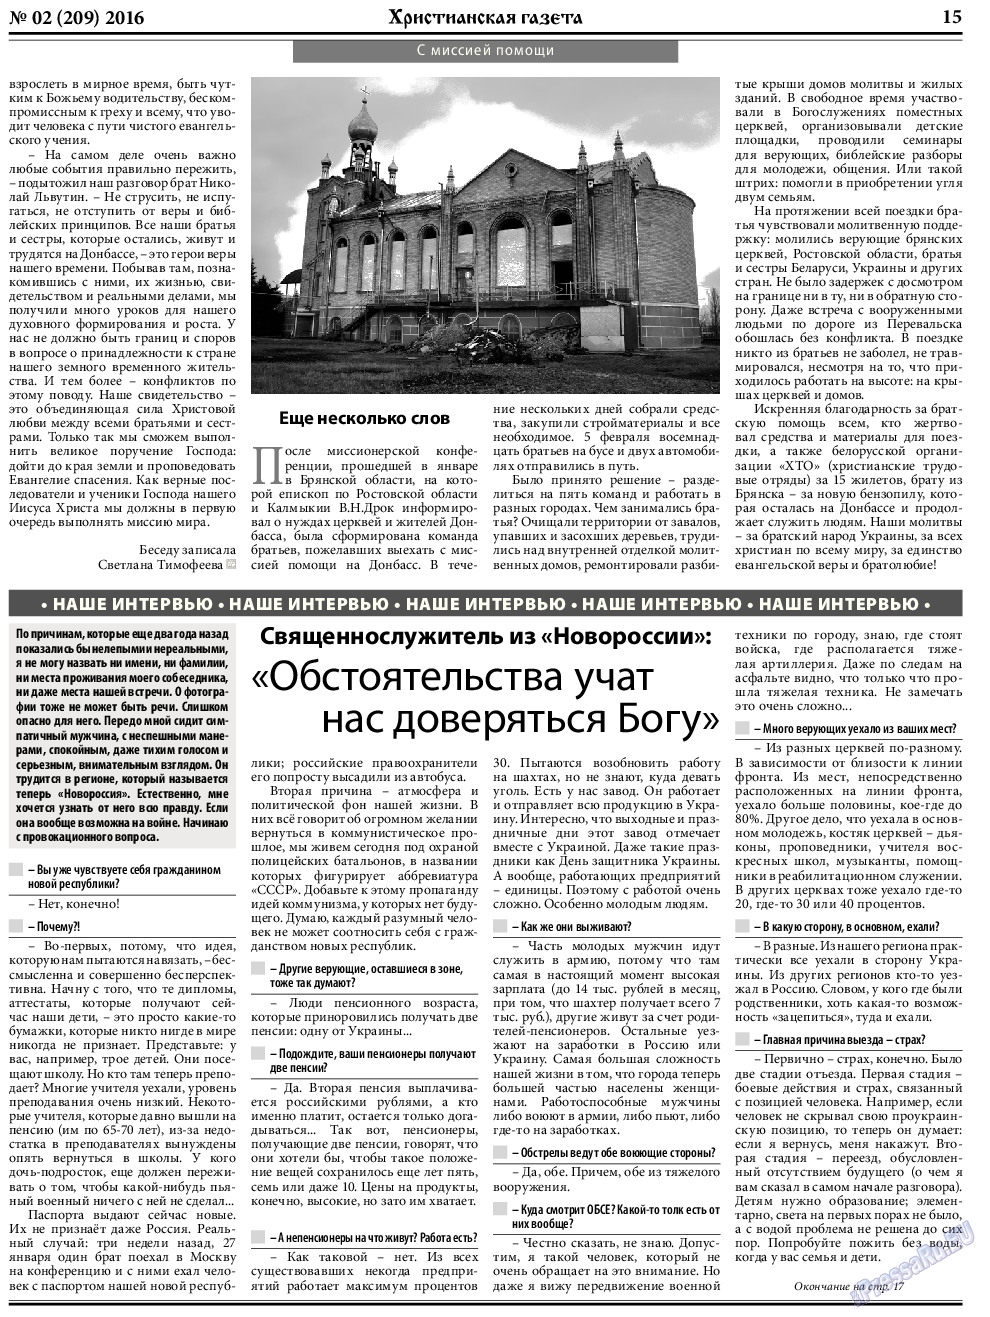 Христианская газета, газета. 2016 №2 стр.23